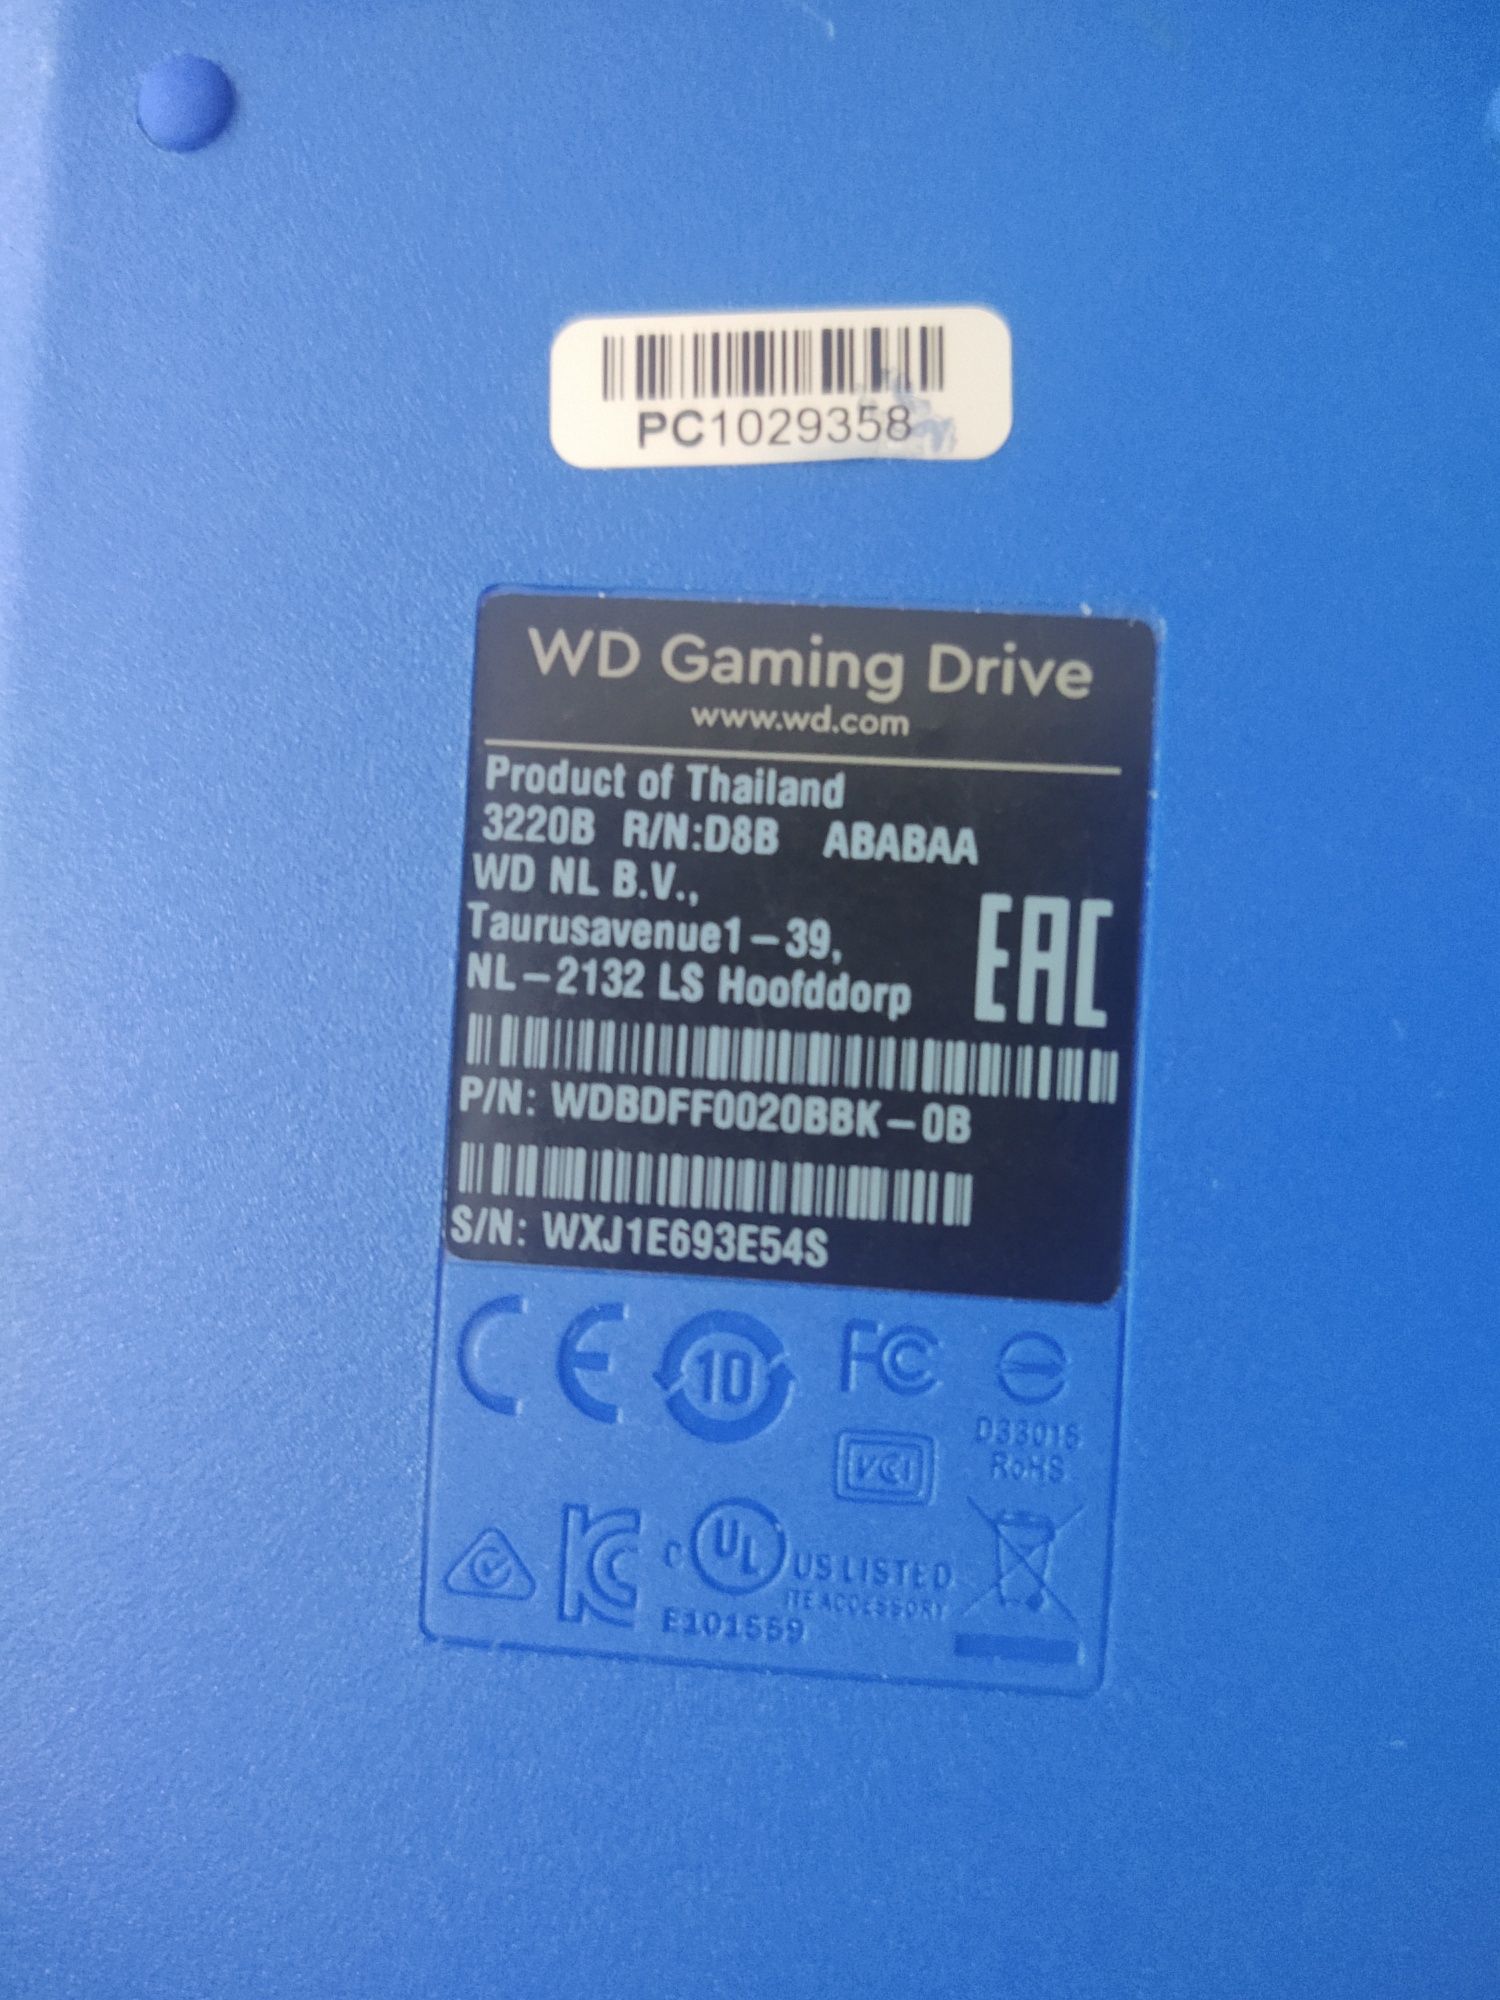 Нерабочий внешний жесткий диск 2TB Western Digital для Playstation 2ТБ